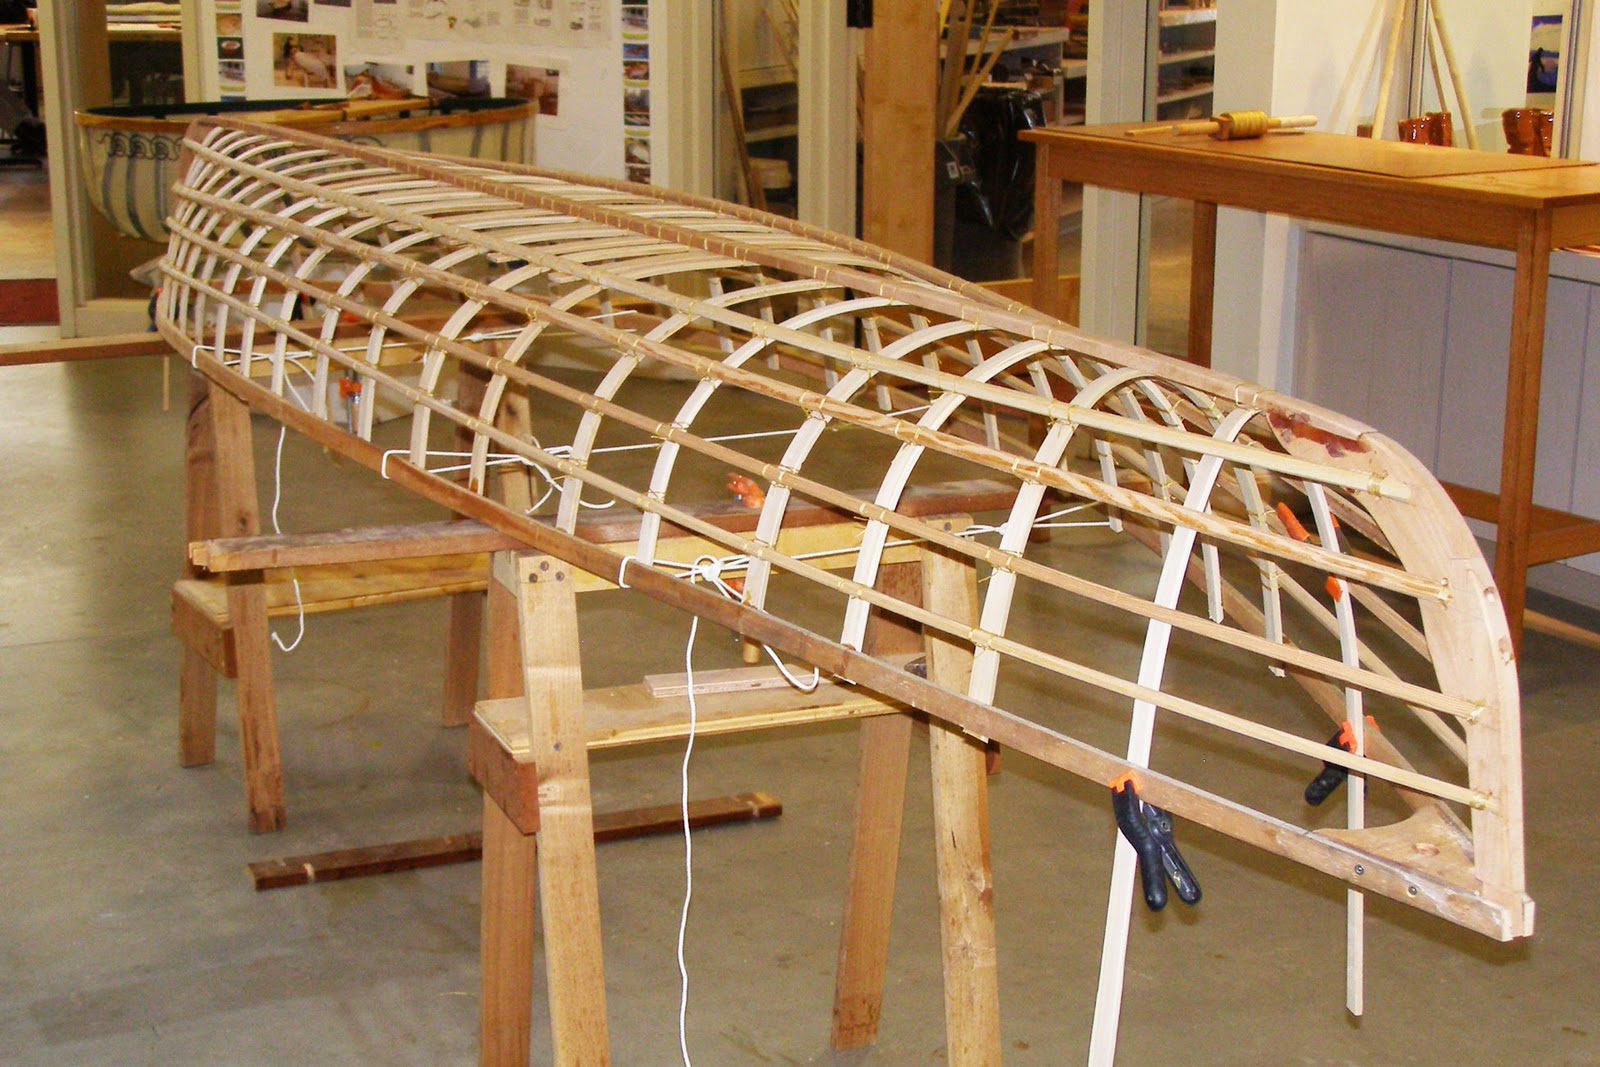 Spencer Karl's skin-on-frame canoe.